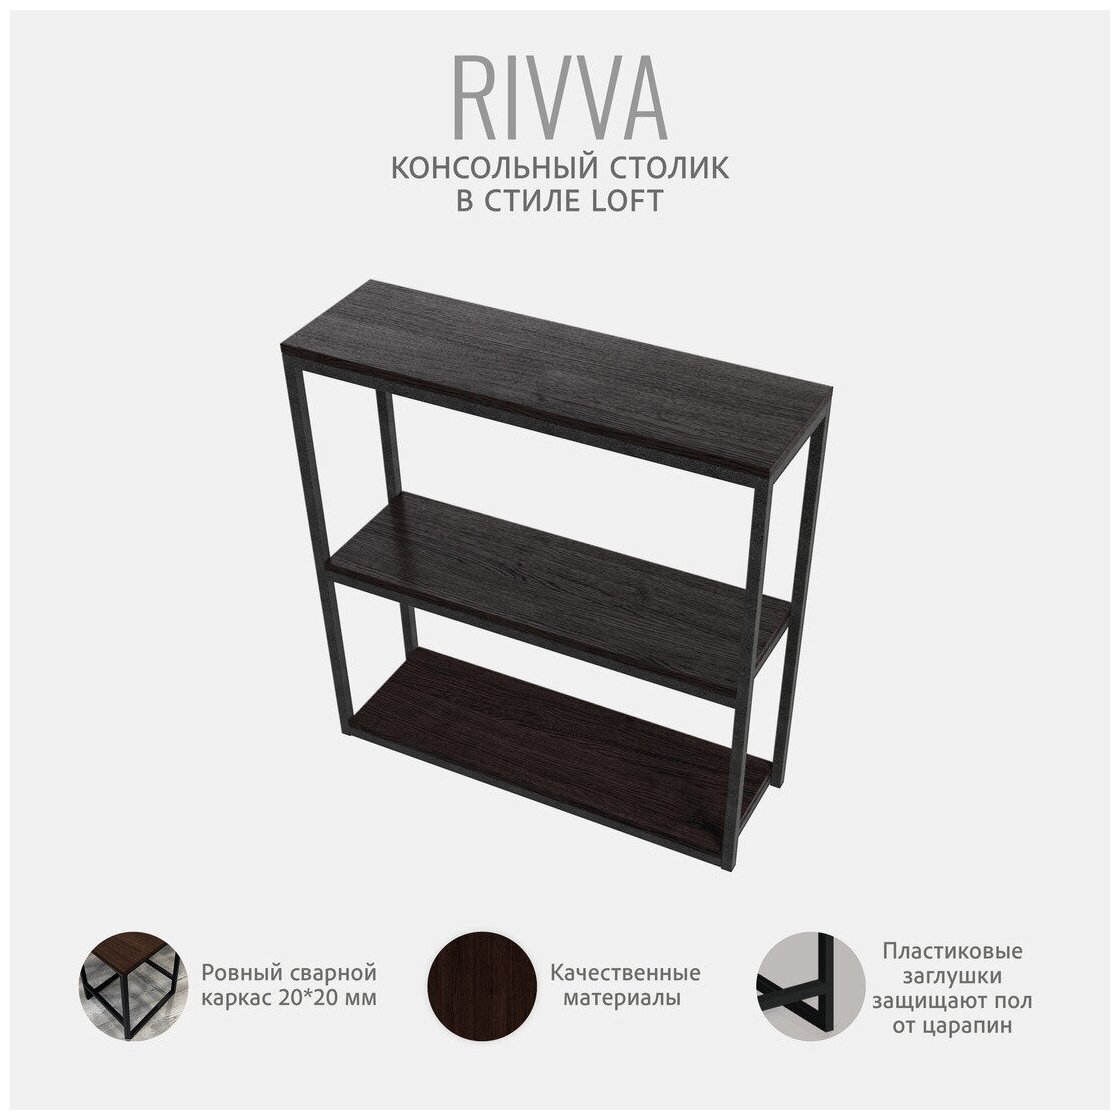 Консольный столик темно-коричневый, консоль мебельная, журнальный столик, приставной столик, 80x80x25 см, RIVVA loft, Гростат - фотография № 4